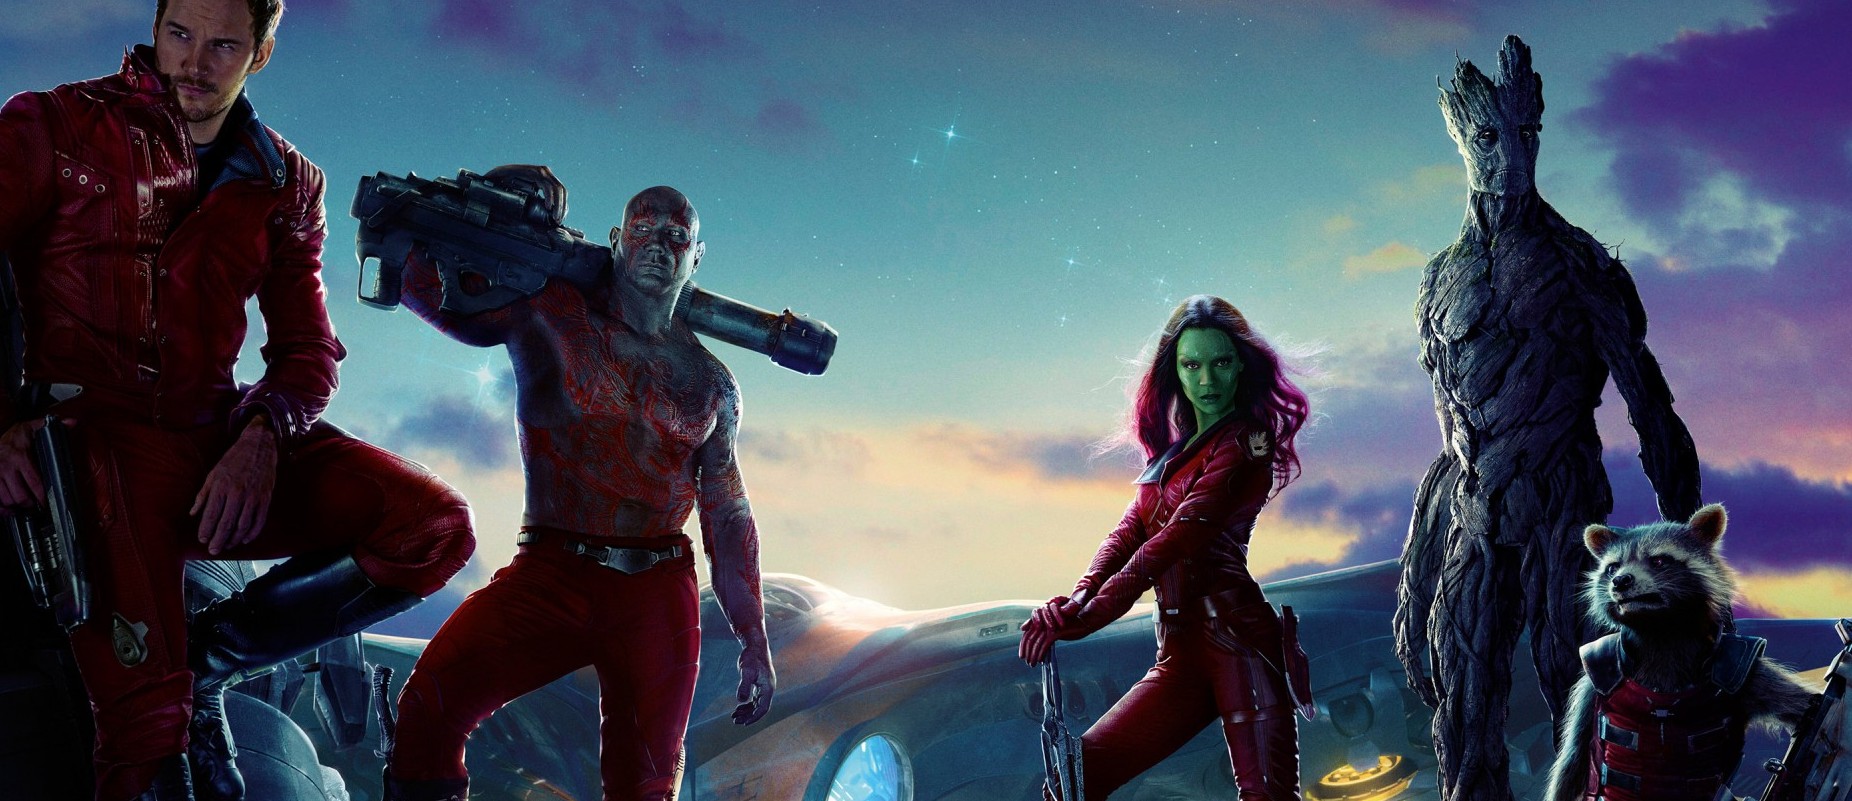 Marvel treffer blink med den rølpete og rampete romoperaen Guardians of the Galaxy